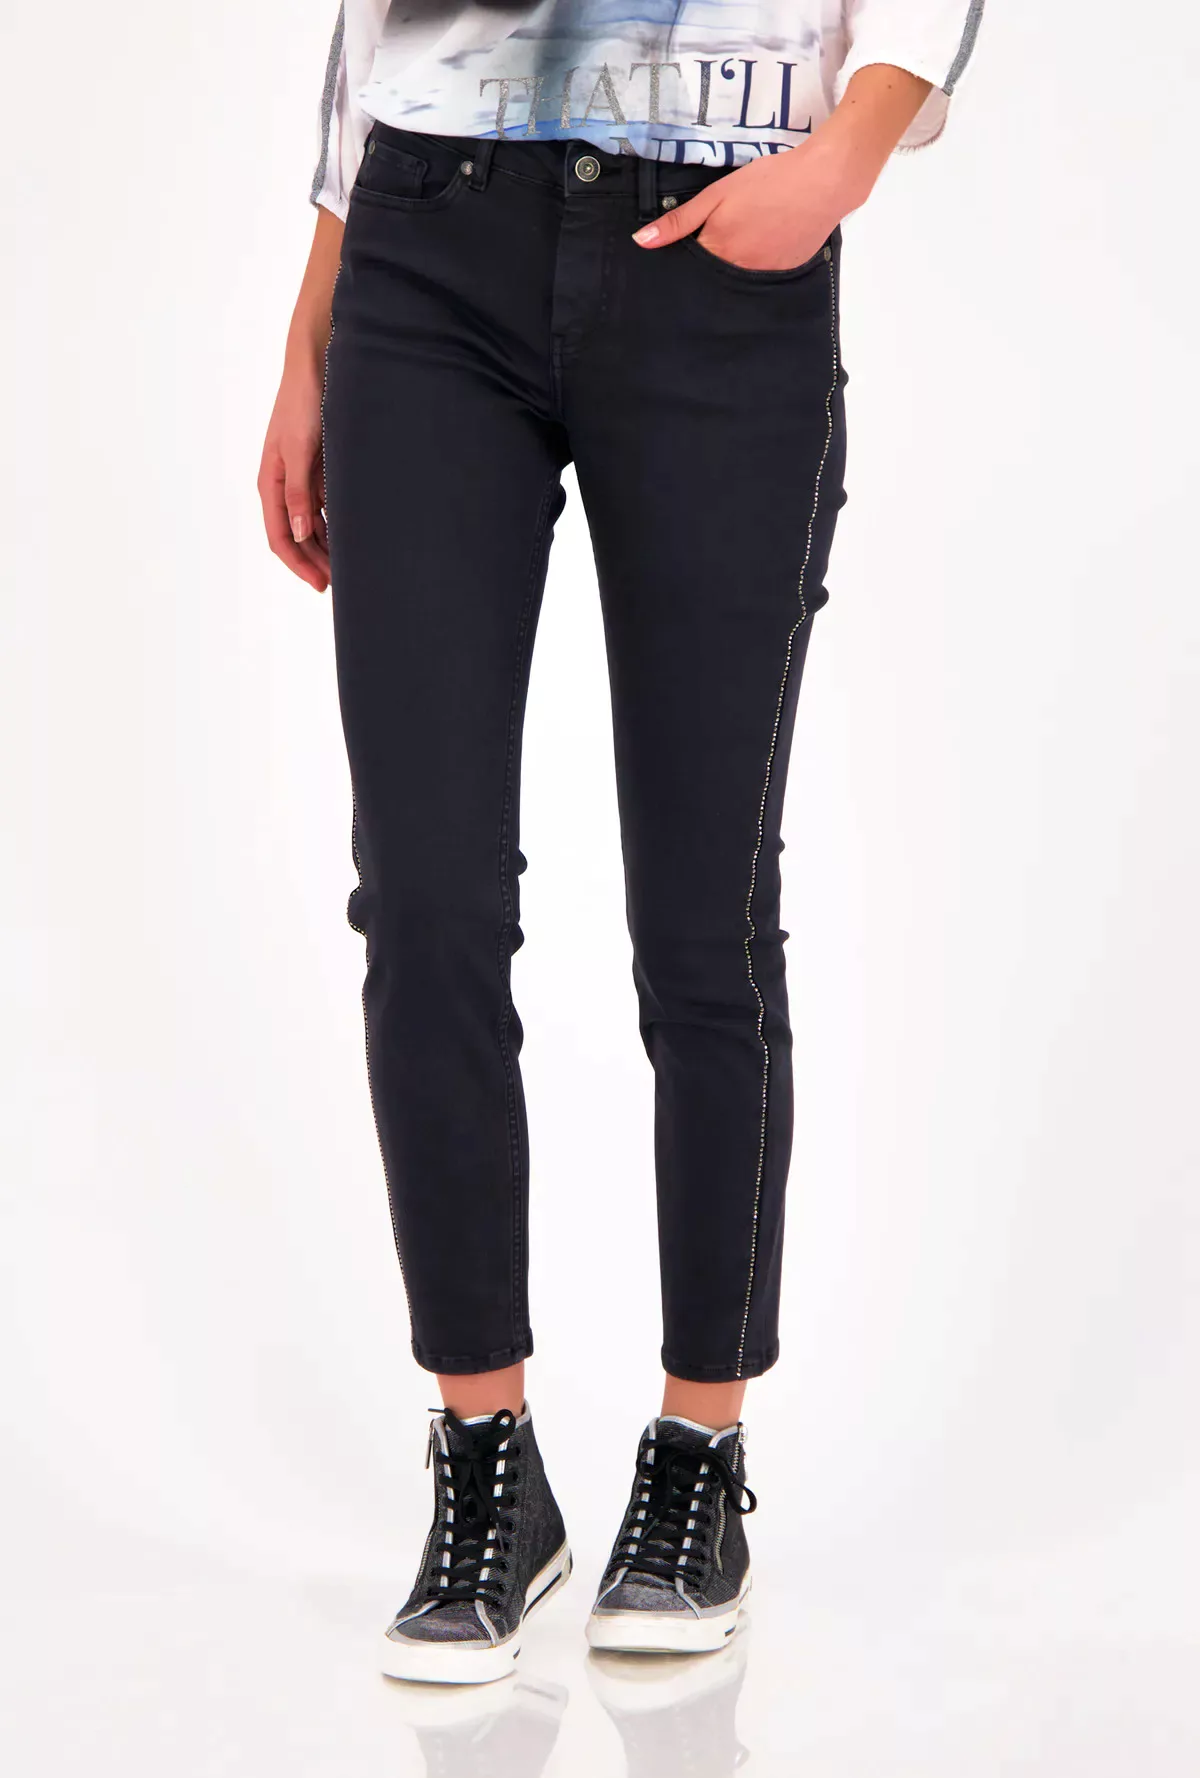 Monari 7/8 Jeans Cape Town black günstig online kaufen